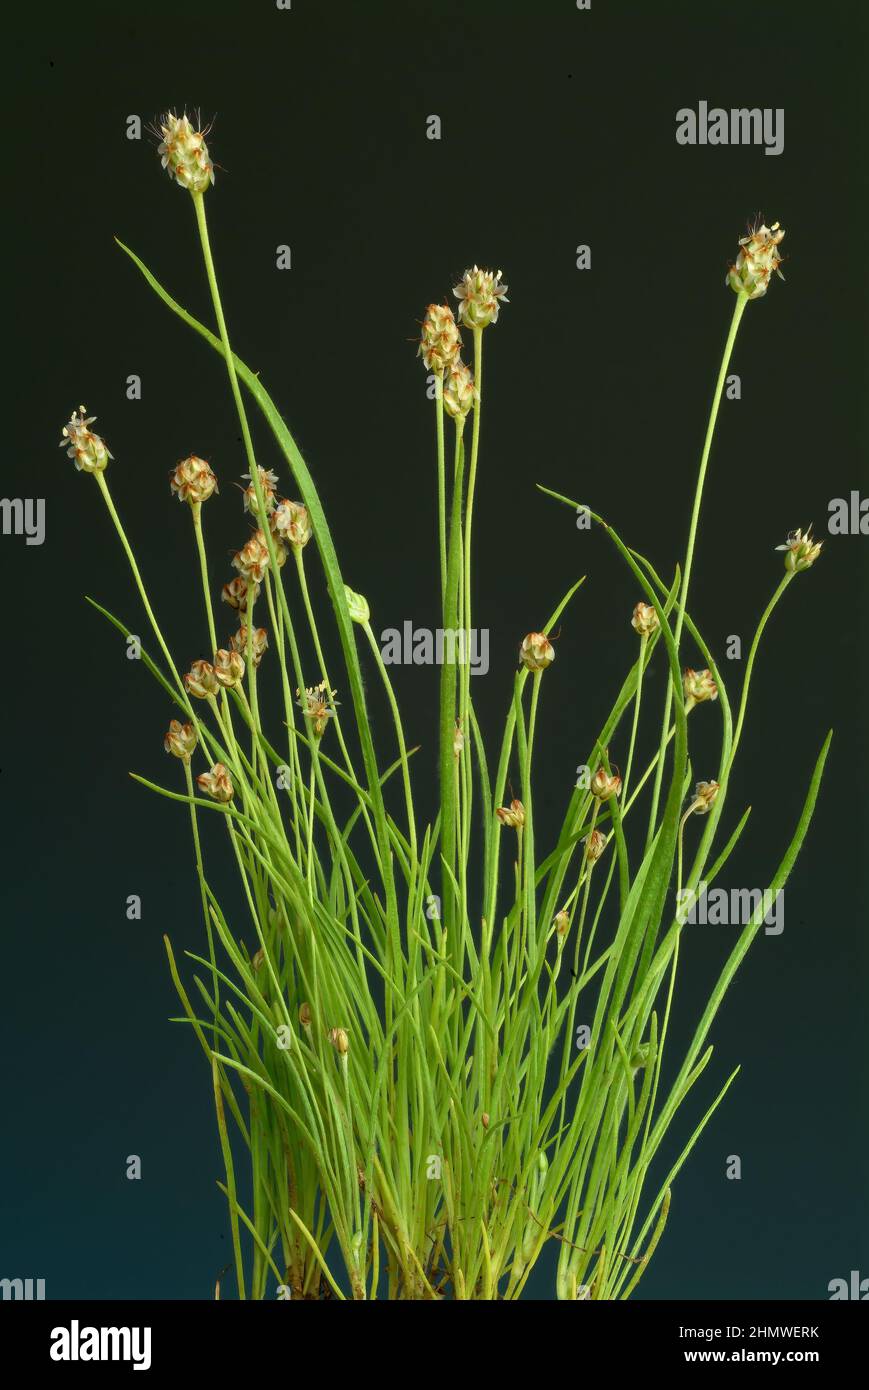 Plantago ovata, Pflanzenart aus der Gattung der Wegeriche, Plantago, die  Samen der Pflanzen werden unter dem Namen Indische Flohsamen oder  Flohsamensc Stock Photo - Alamy